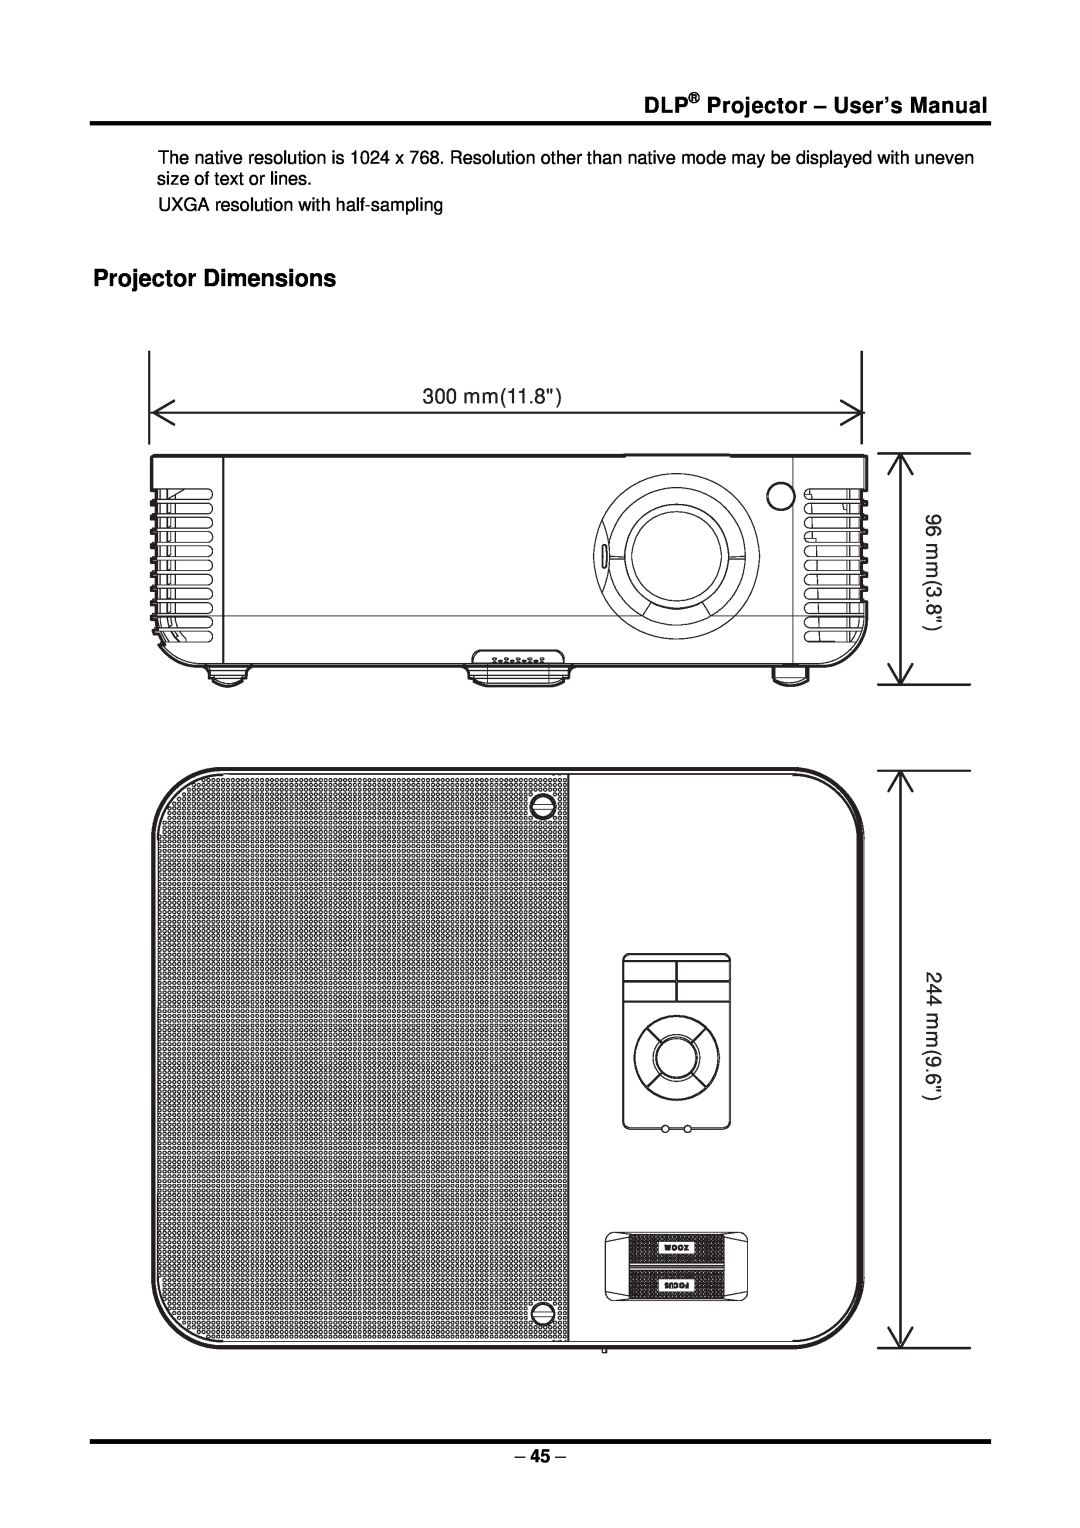 Planar PR5022 manual Projector Dimensions, 300 mm11.8 mm396 244 mm9.6, DLP Projector - User’s Manual 